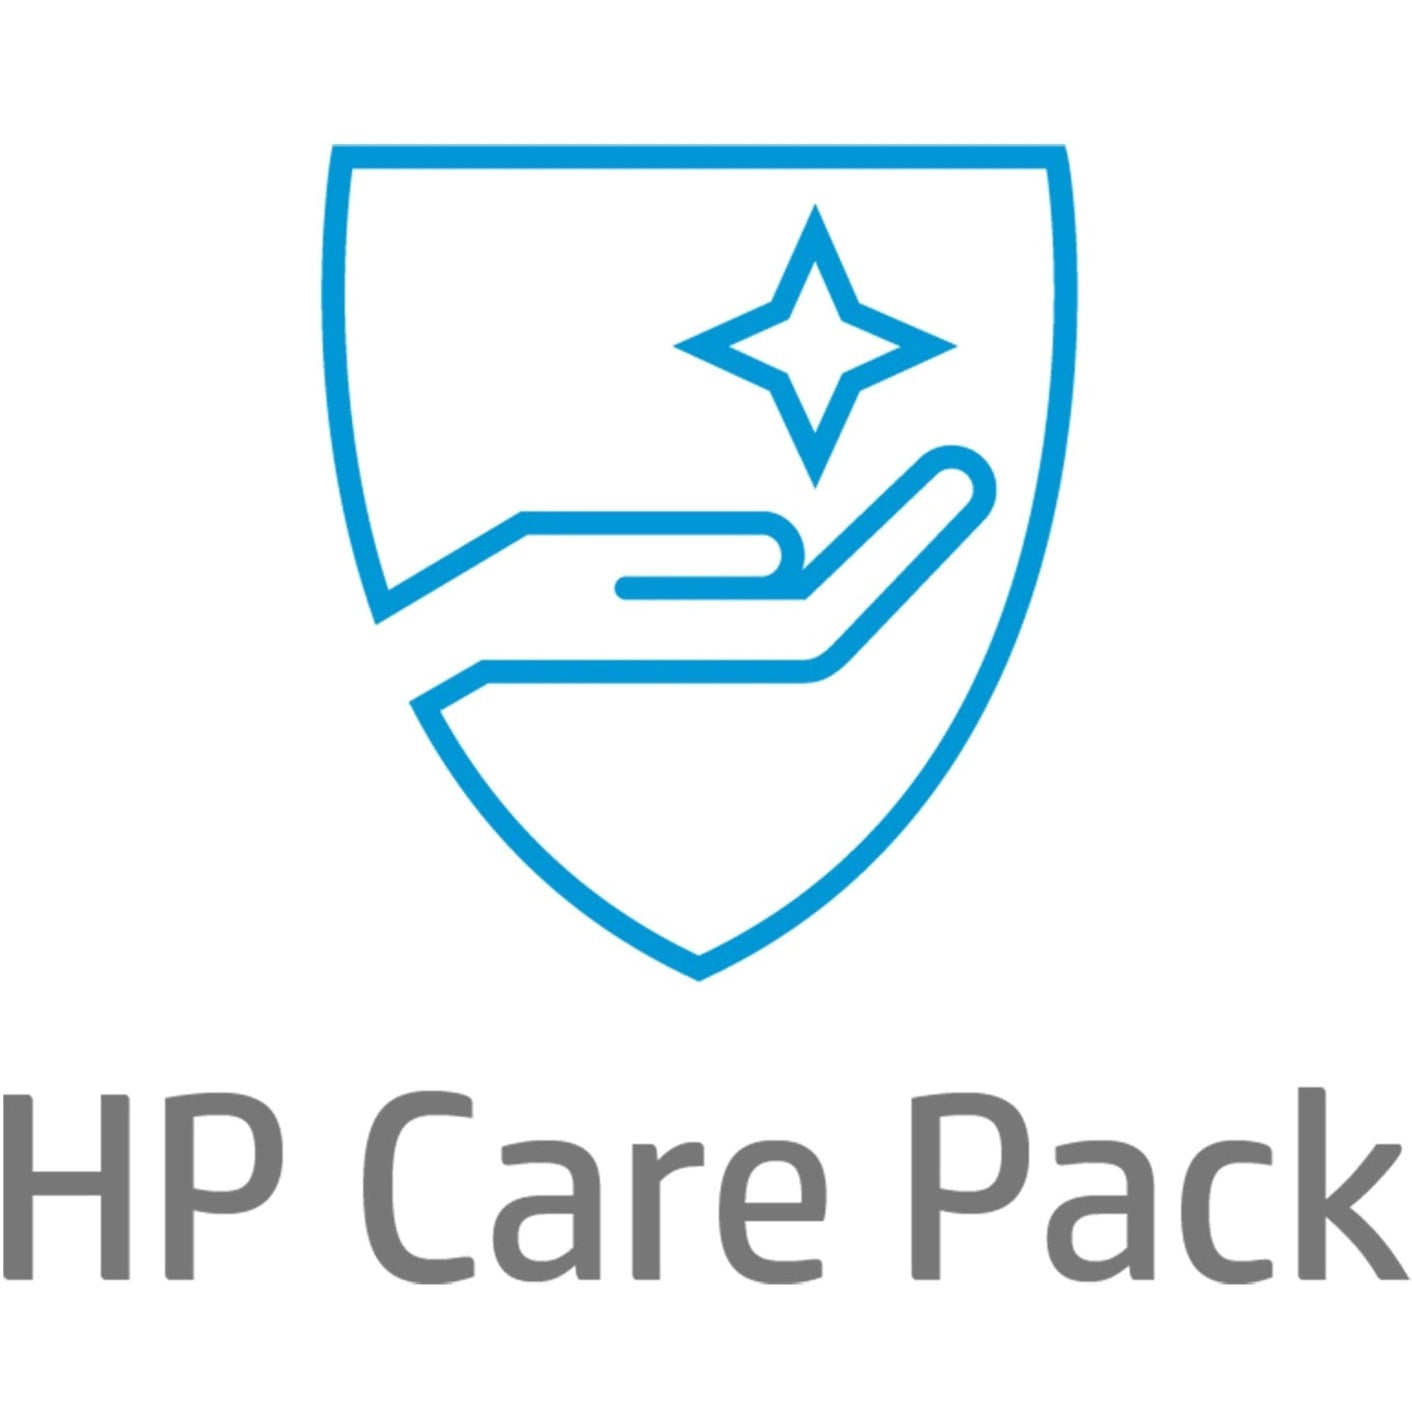 HP Care Pack - 3 Year - Service (UE379E)